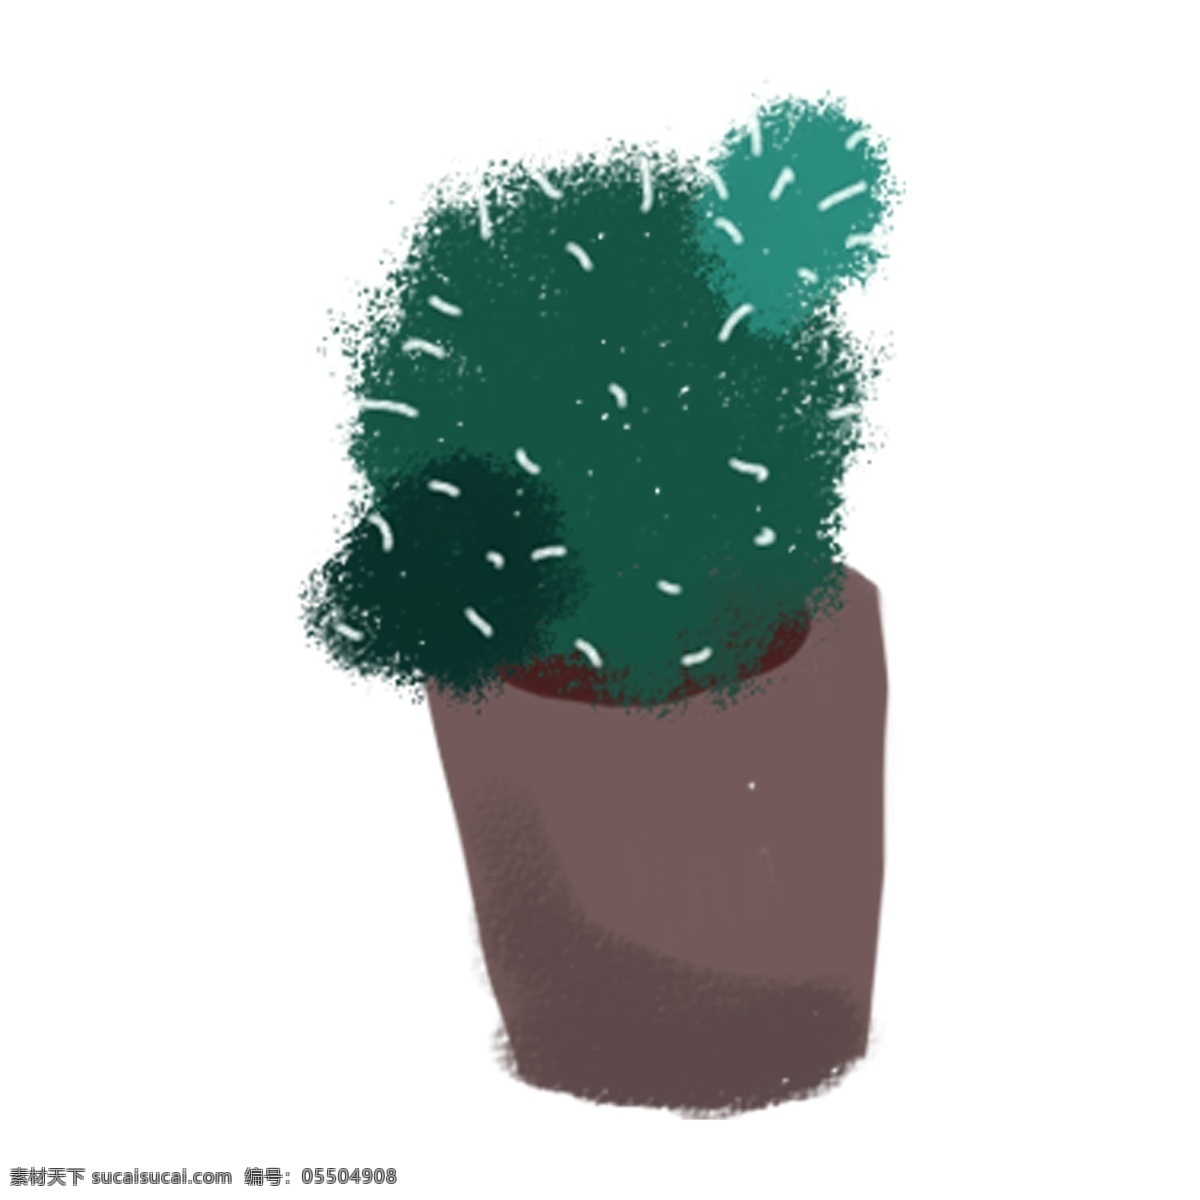 绿色 手绘 盆栽 仙人掌 卡通素材 可爱 植物 清新 免扣素材